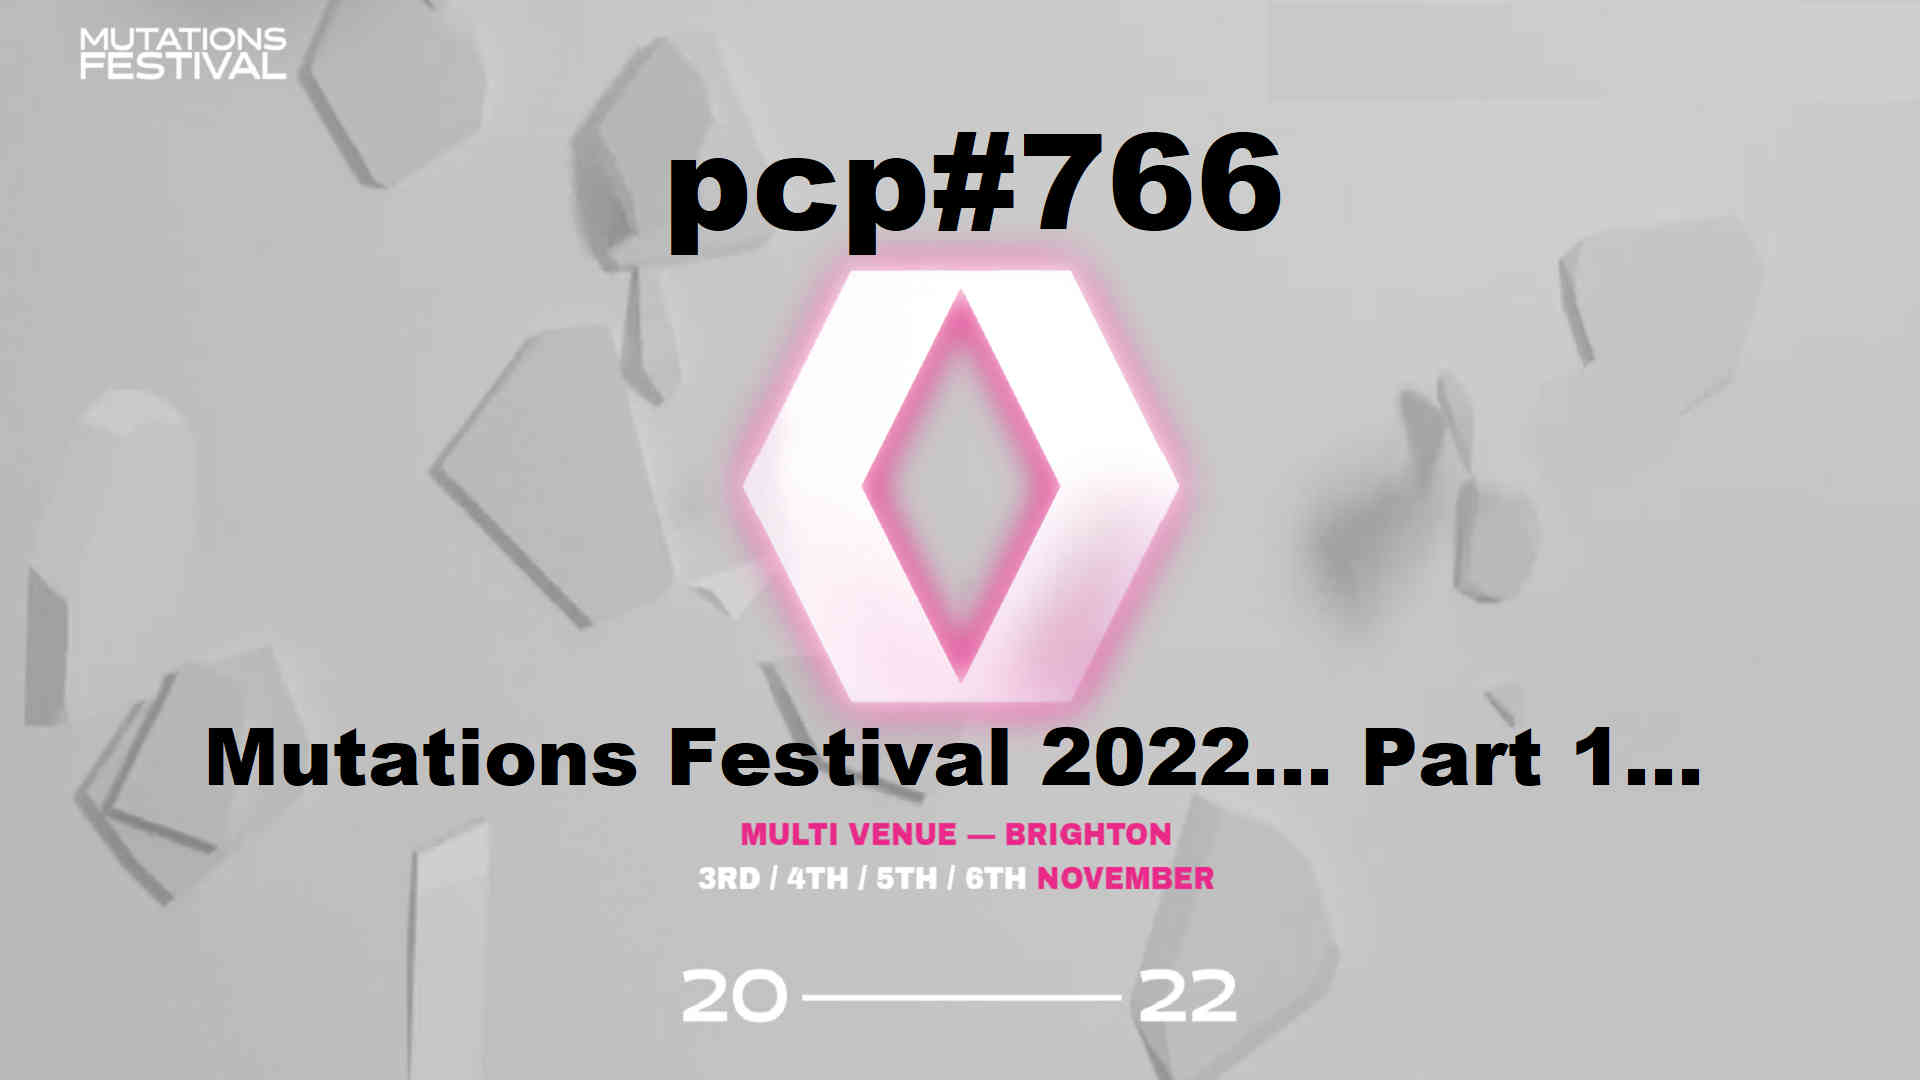 PCP#766... Mutations Festival 2022...Part 1...